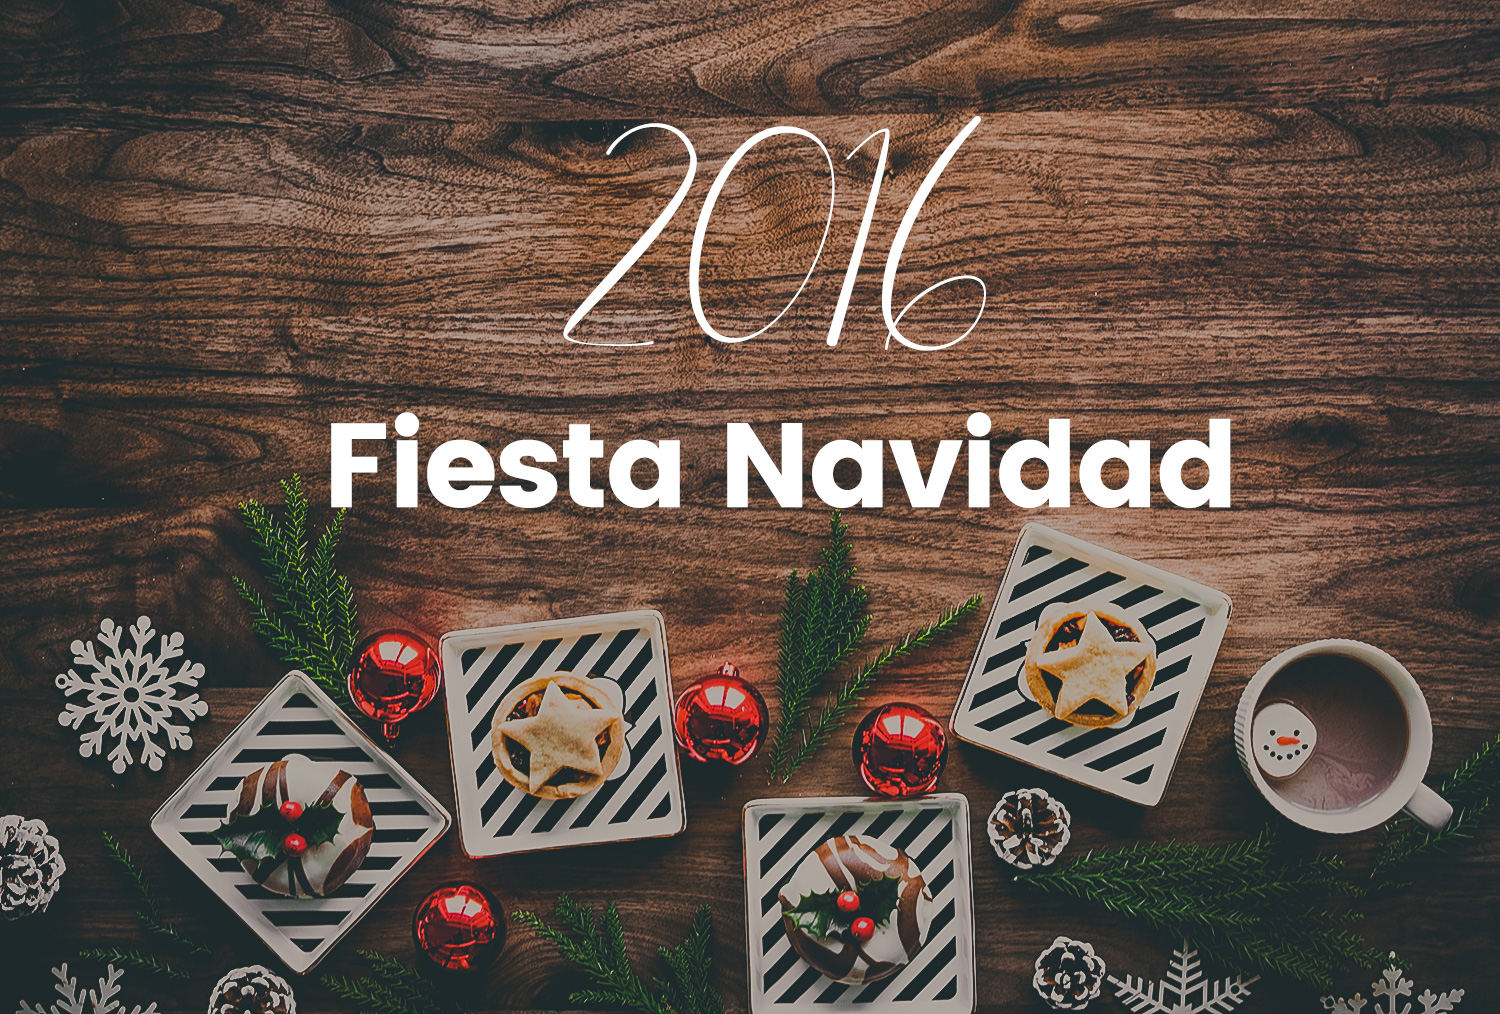 Fiesta Navidad 2016